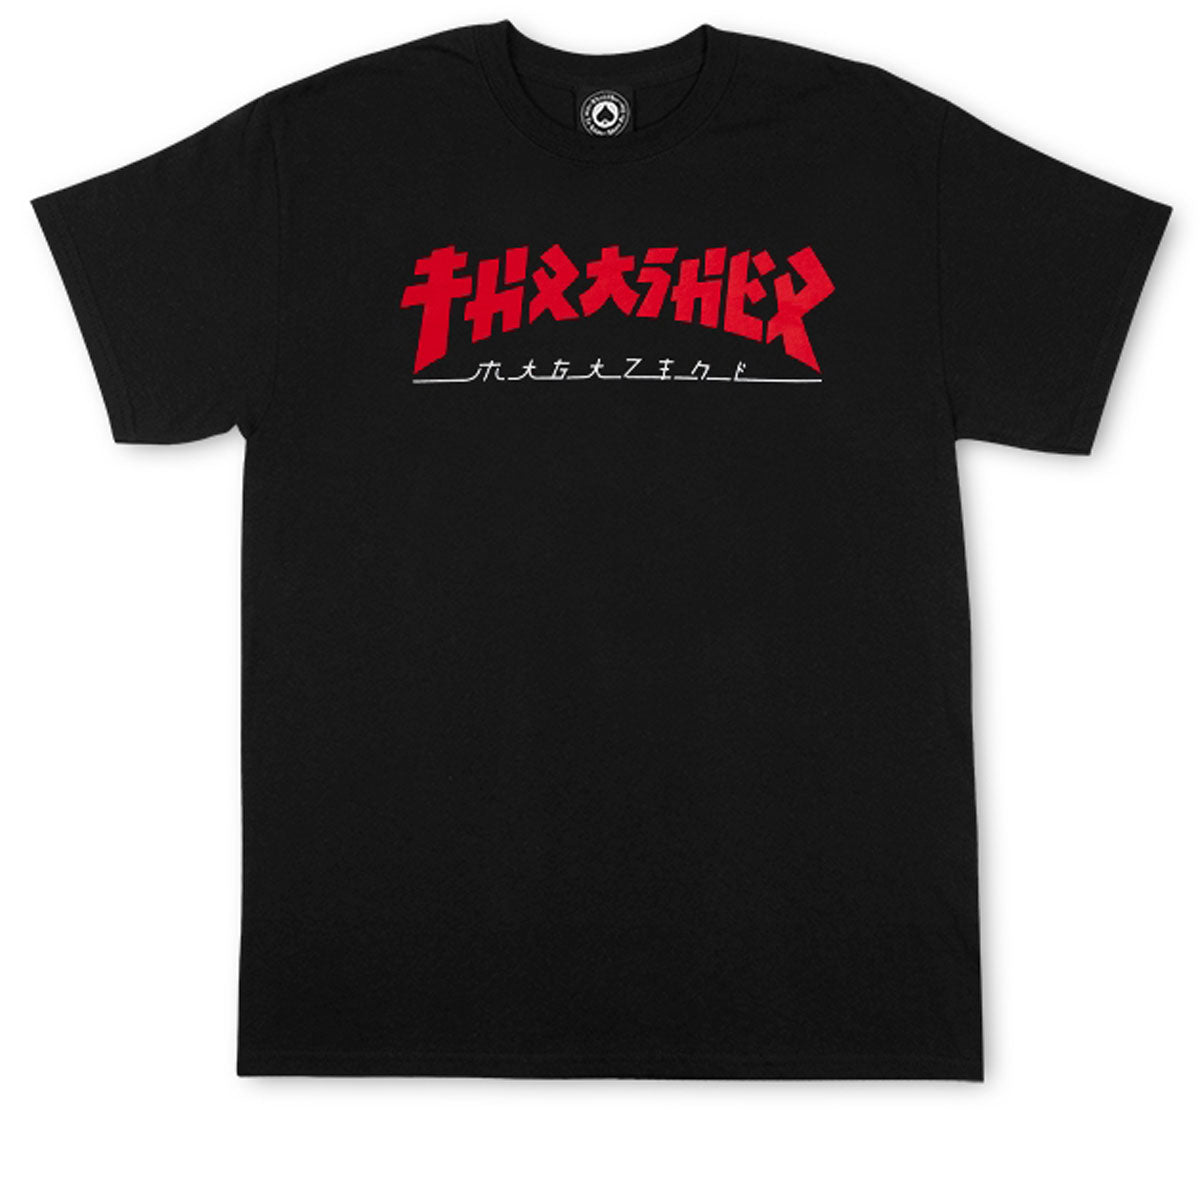 Thrasher Godzilla T-Shirt - Black image 1